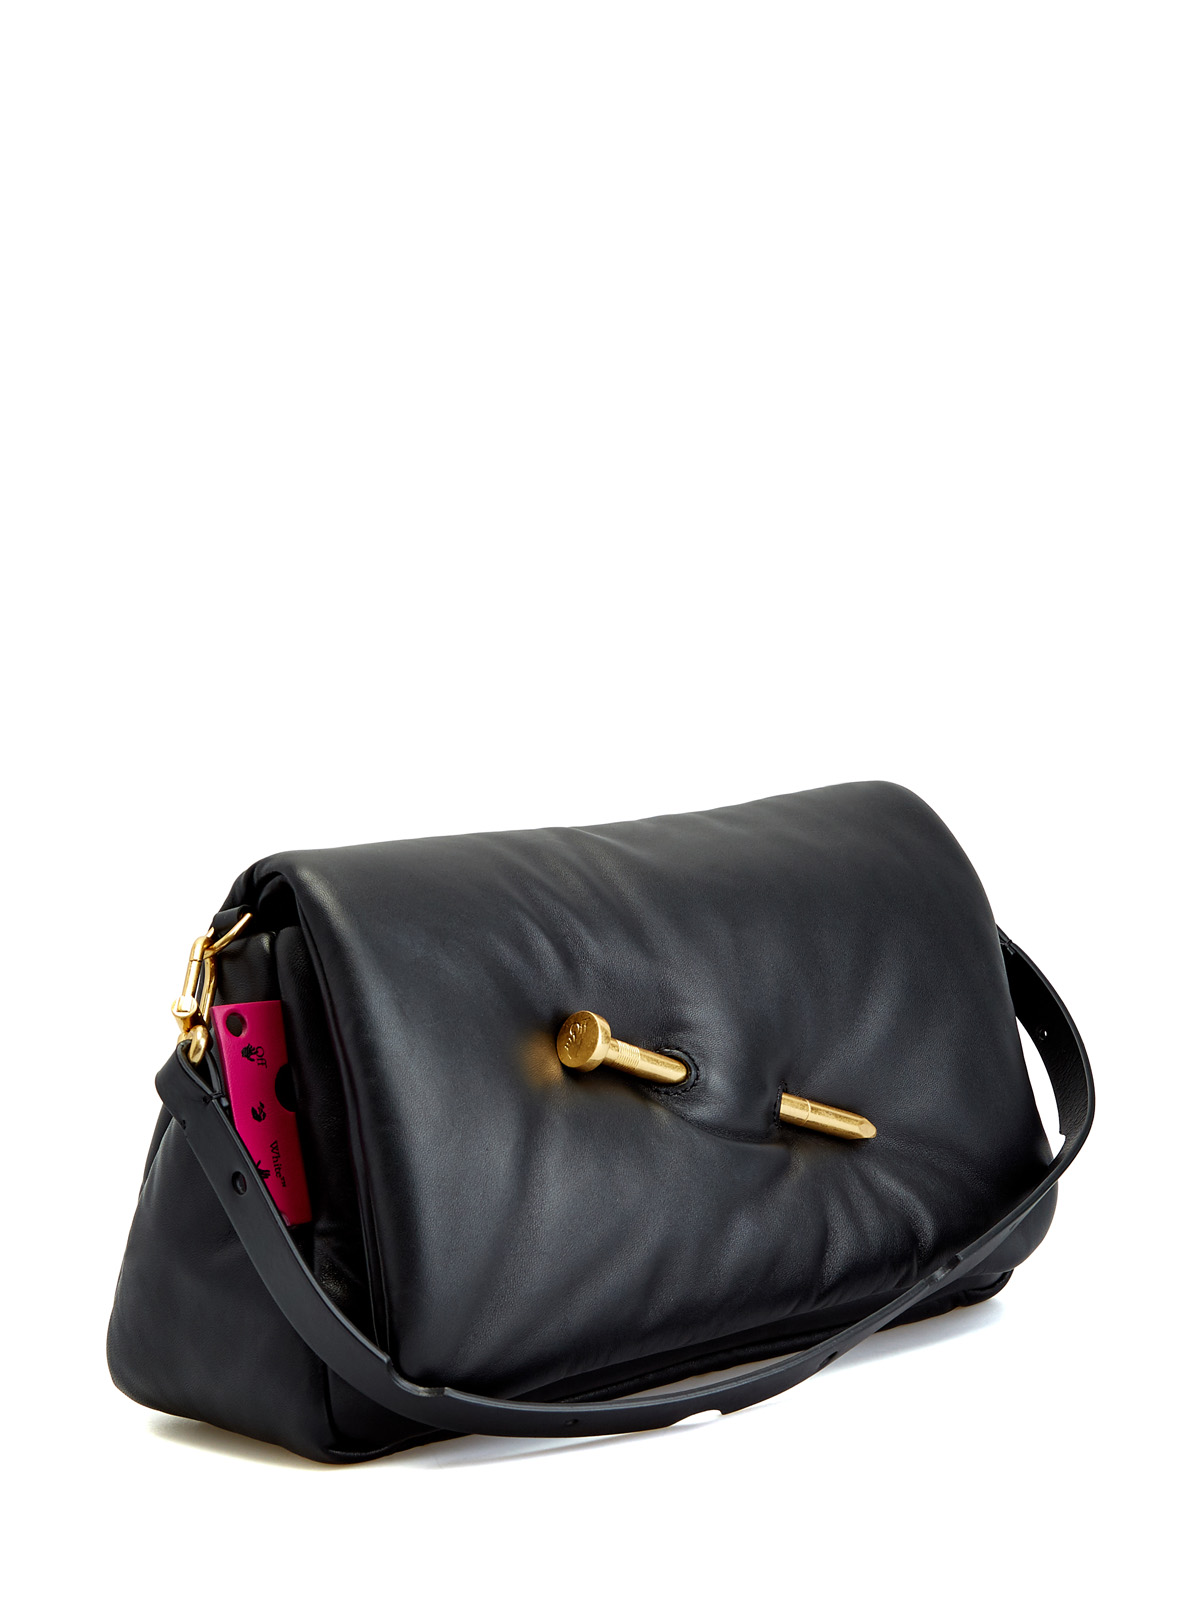 Мягкая сумка Nailed из полированной кожи с литым декором OFF-WHITE, цвет черный, размер 36;36.5;37.5;38;38.5;39;40 - фото 3